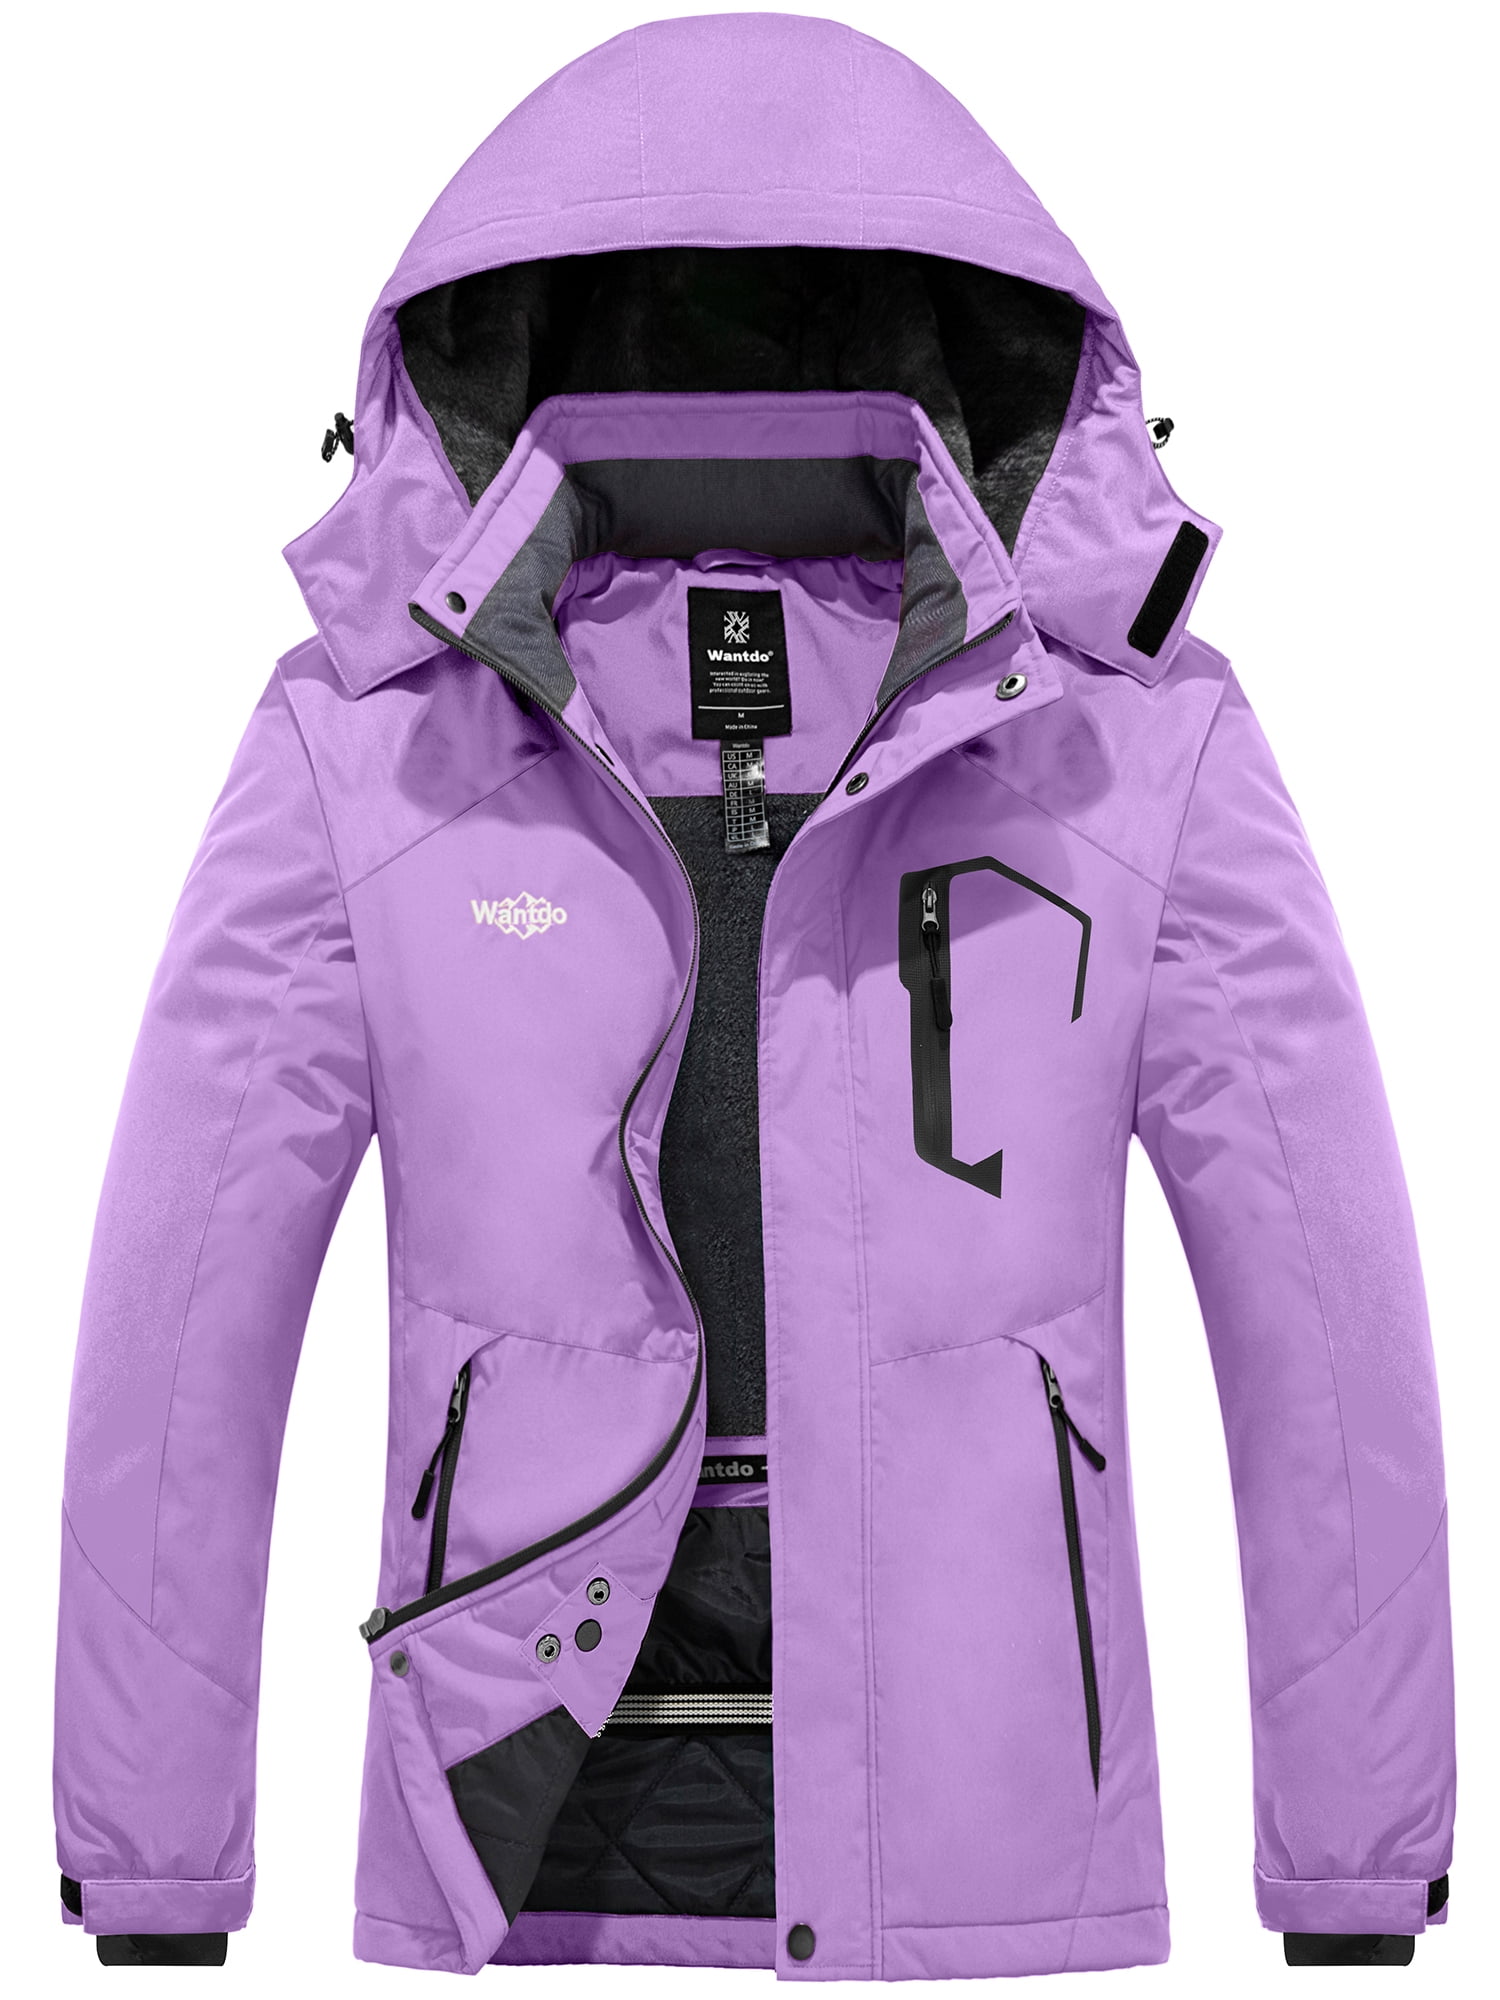 Wantdo Womens Snowboard Jacket Waterproof Ski Jacket Windproof Winter Coat Light Purple S